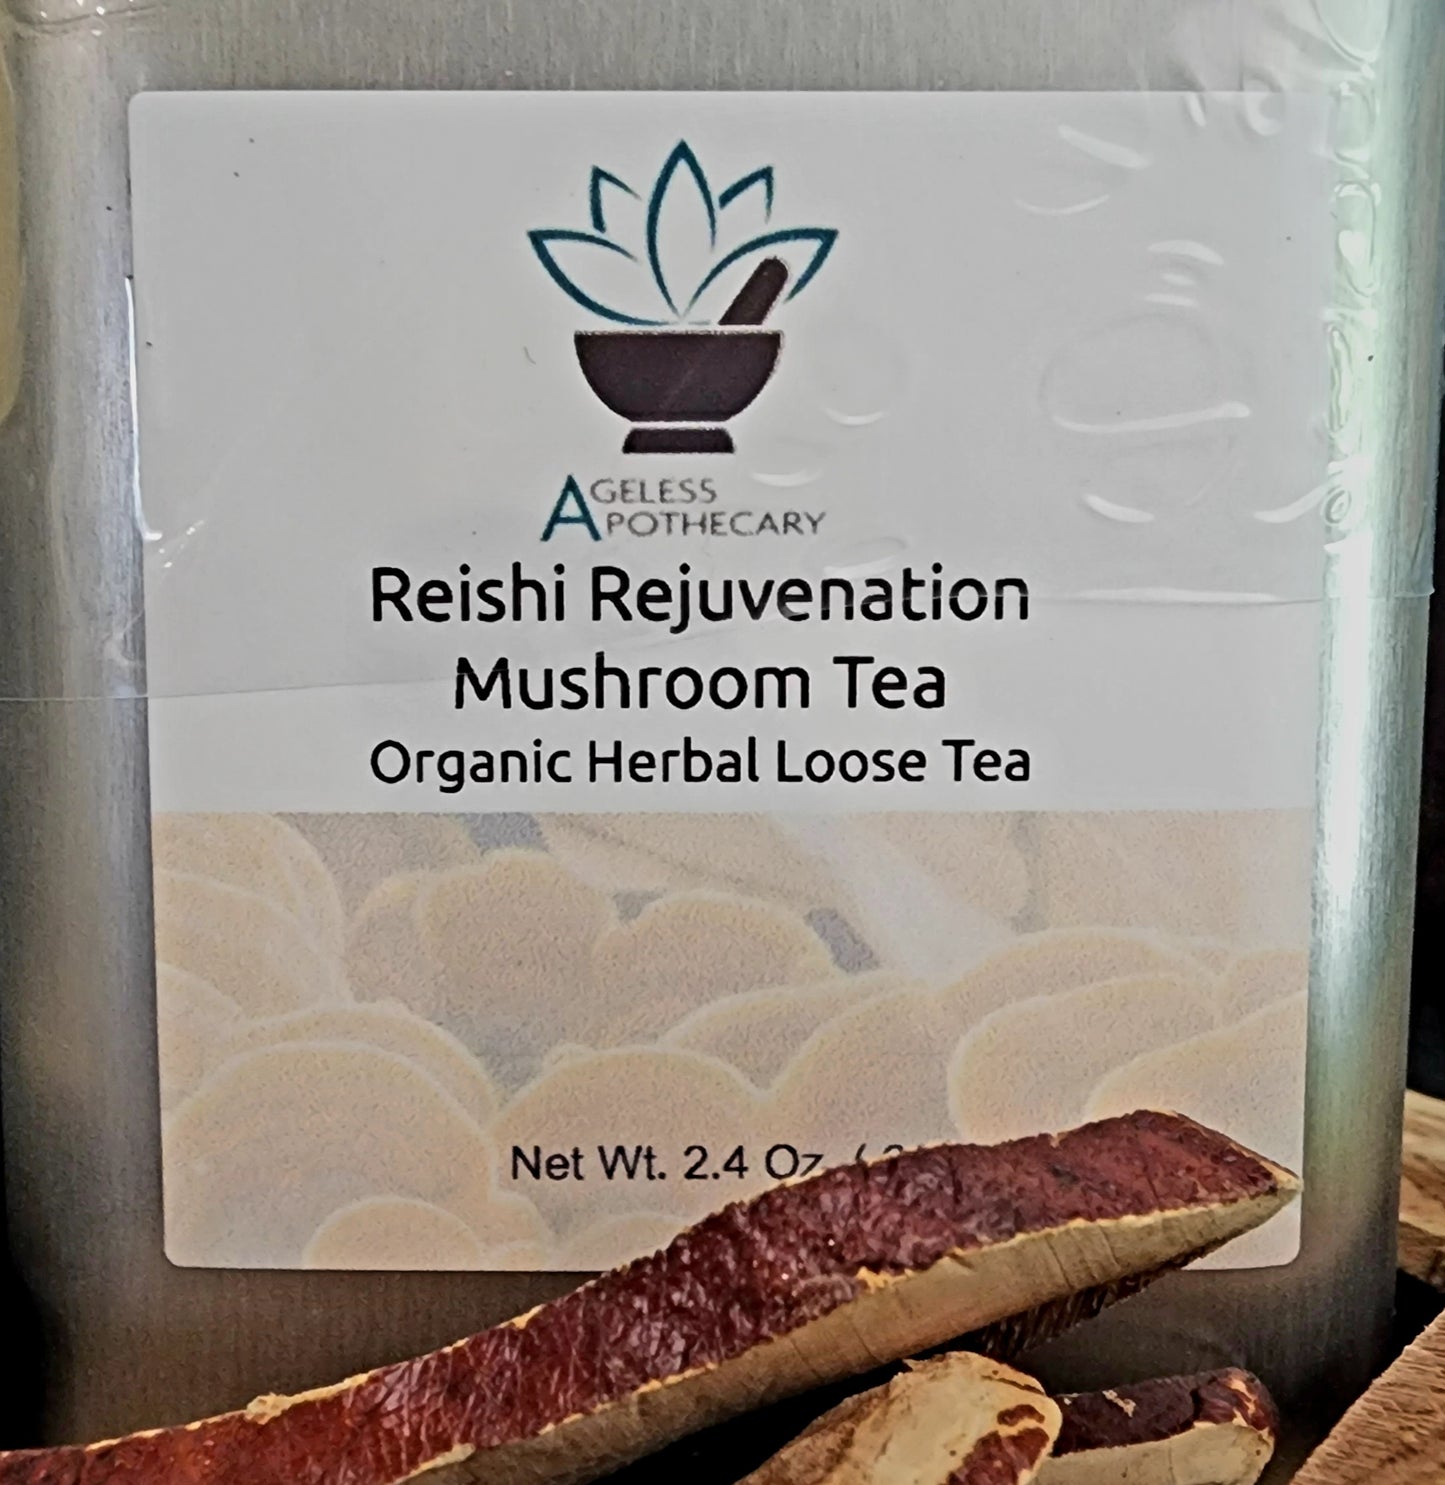 Reishi Rejuvenation Mushroom Tea